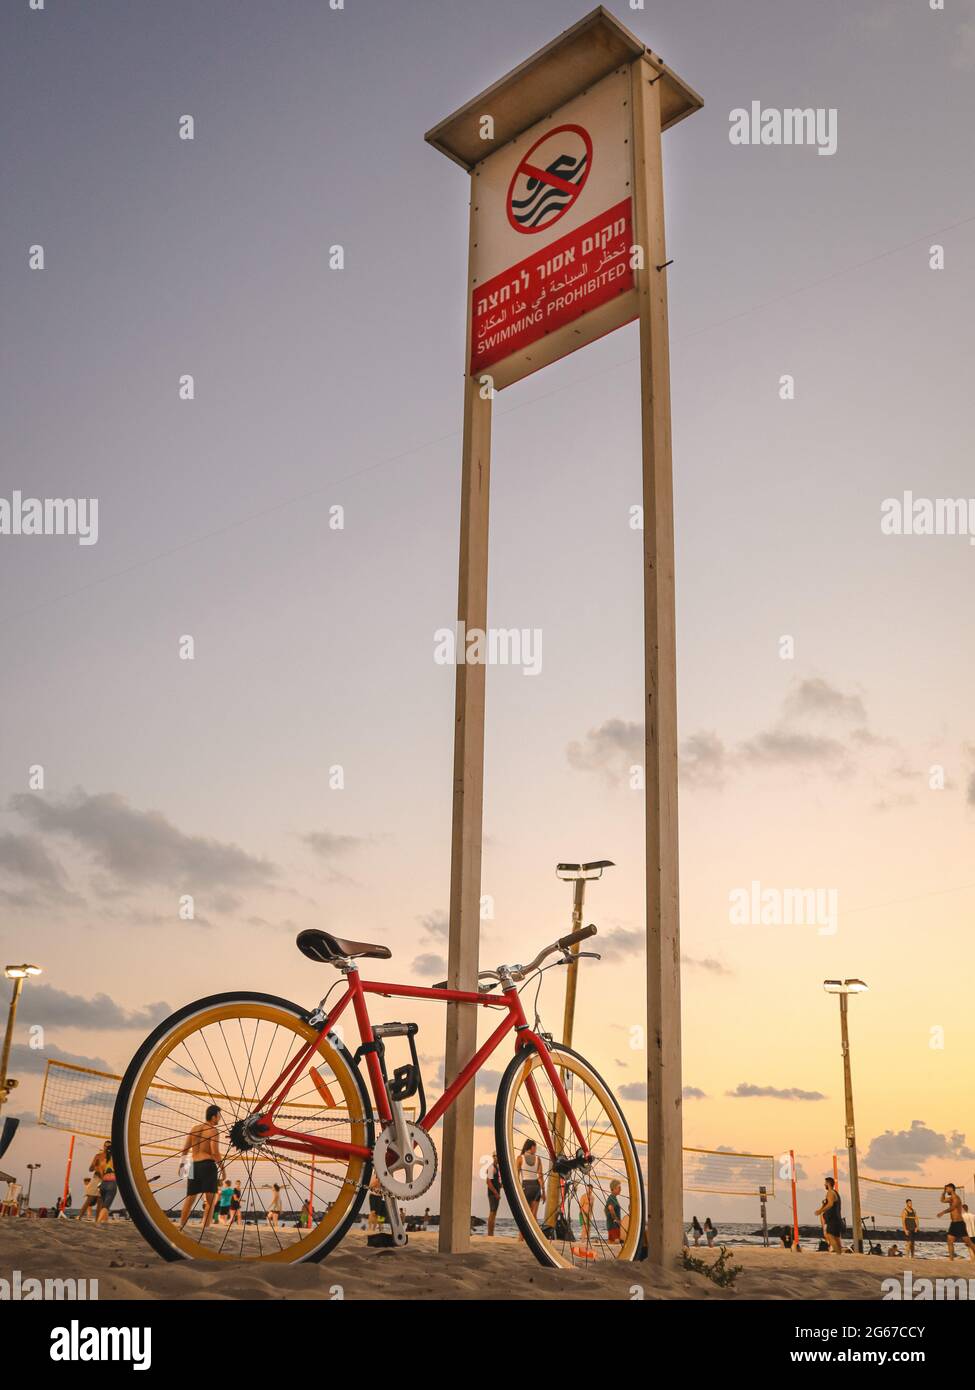 red retro trekking in bicicletta sulla spiaggia Foto Stock